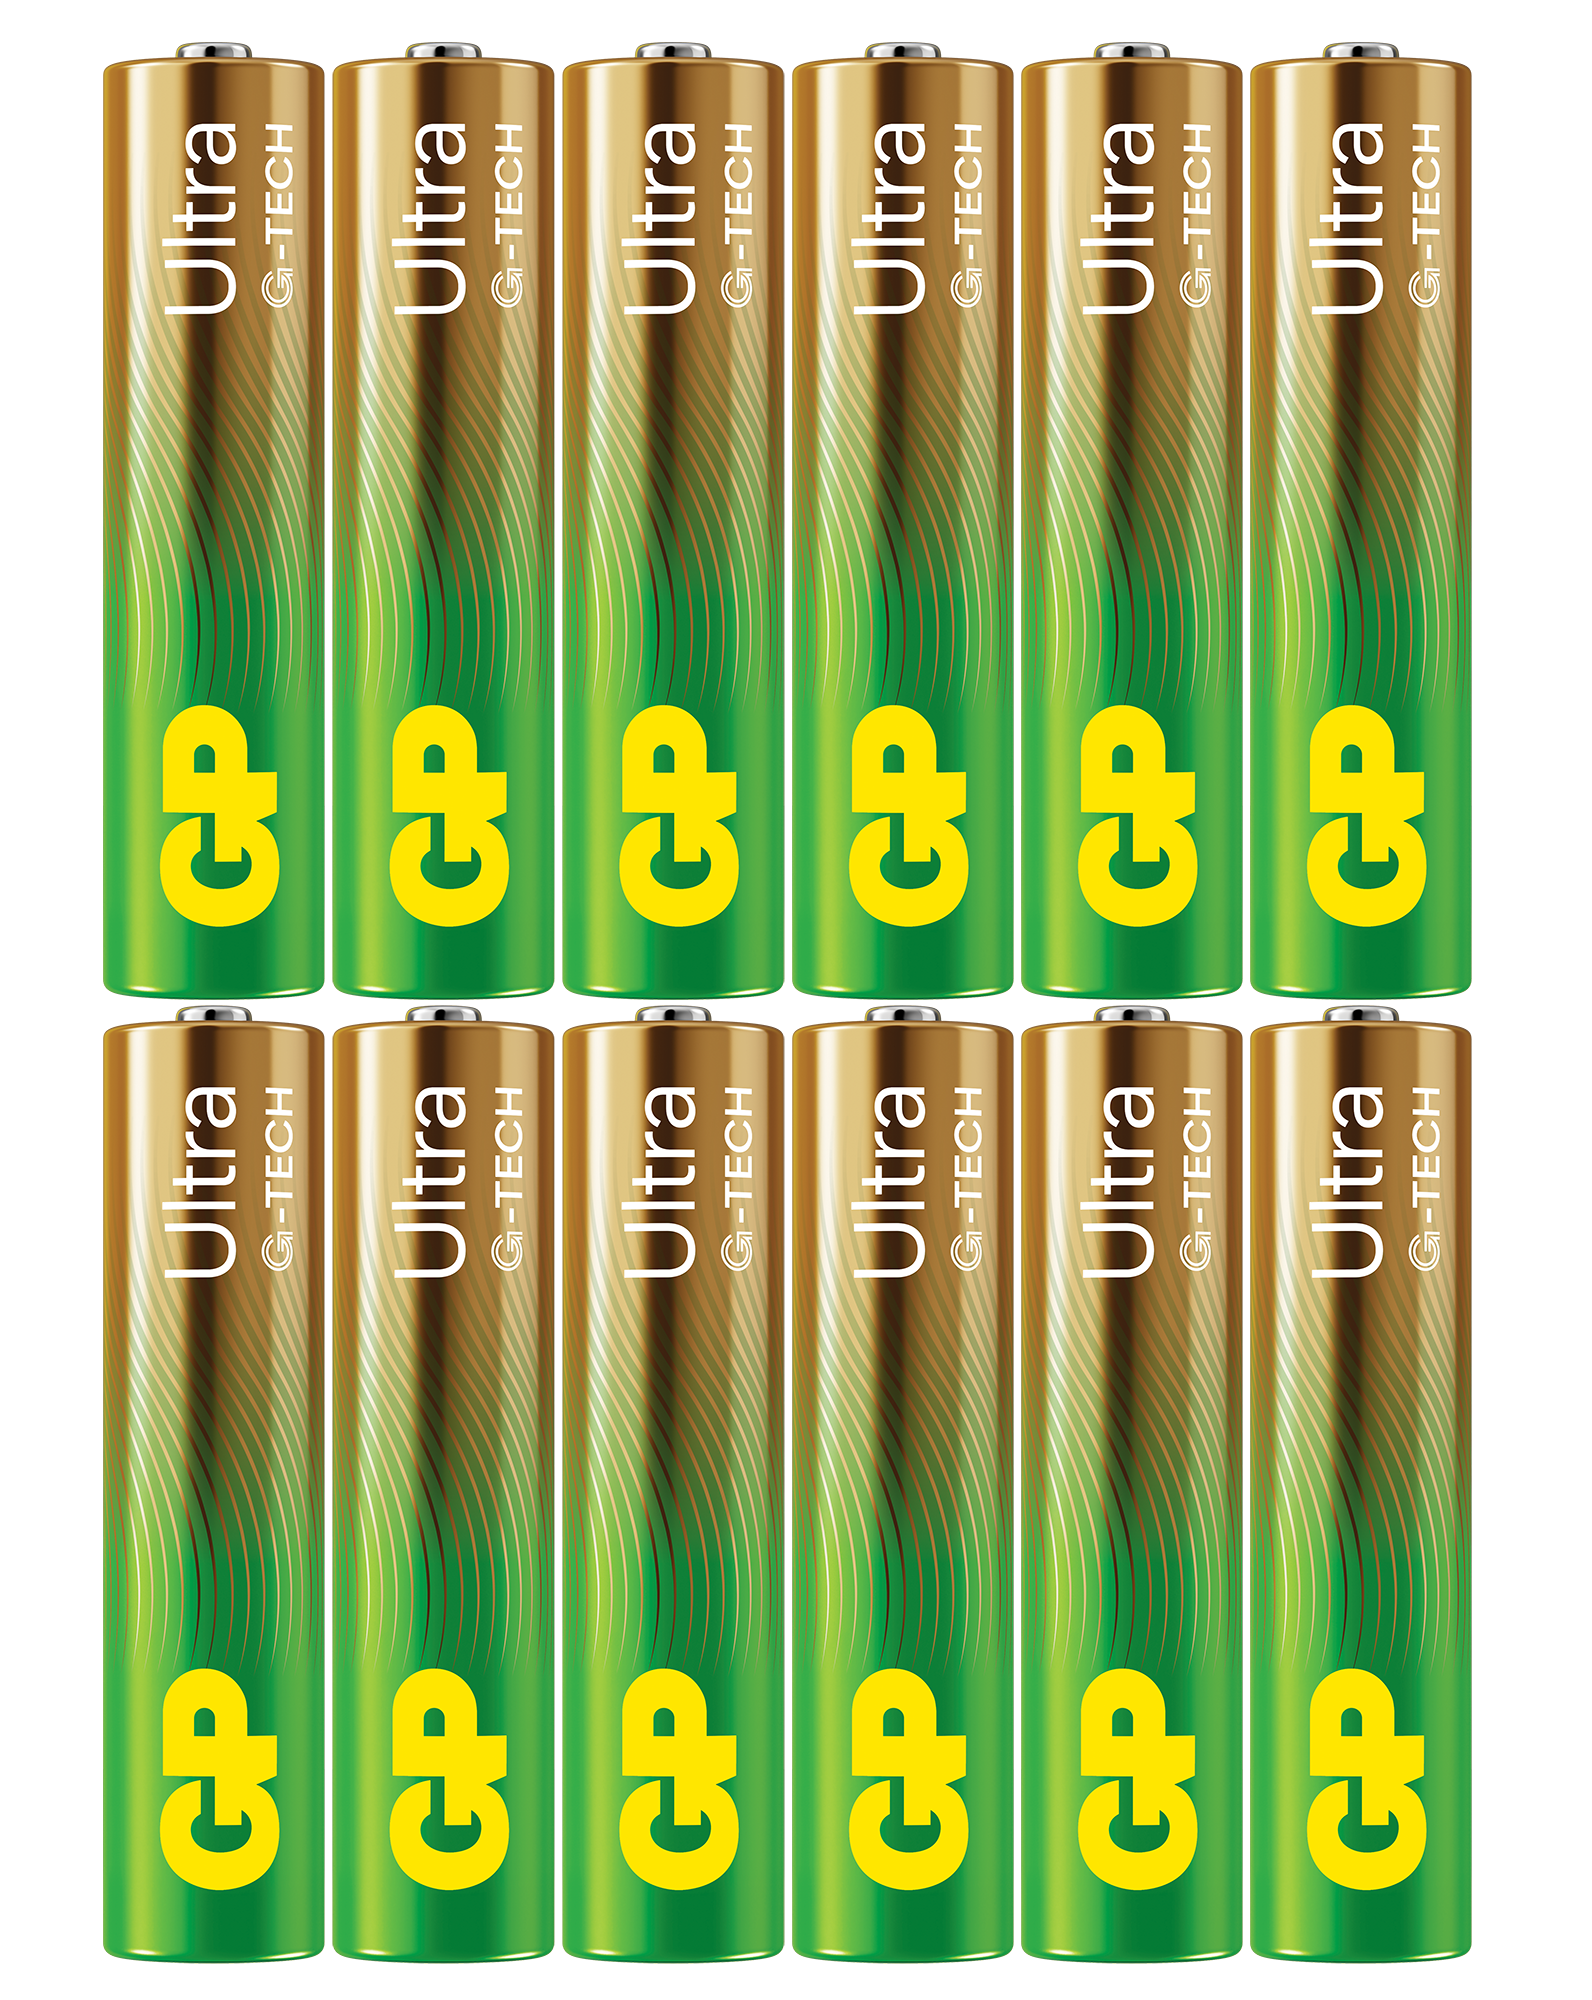 Ultra Alkaline AAA batteri 24AU/LR03 (12-pak)